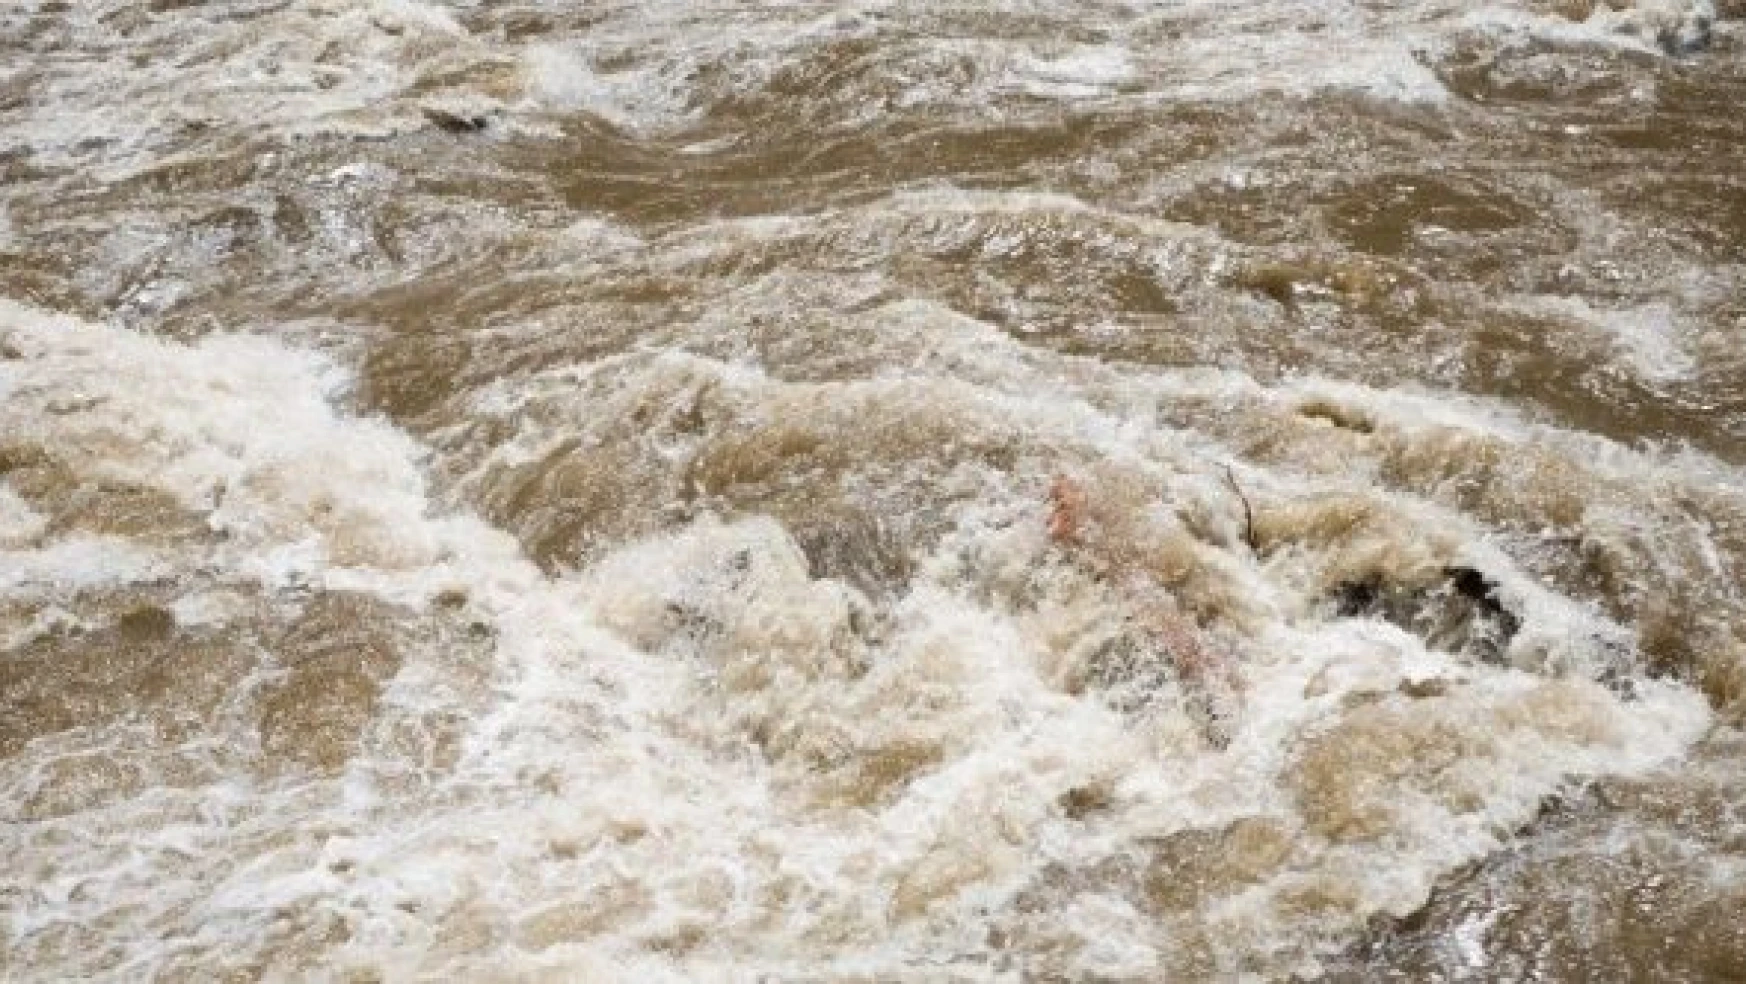 Şanlıurfa'da sel felaketinde ölen kişilerin isimleri belli oldu